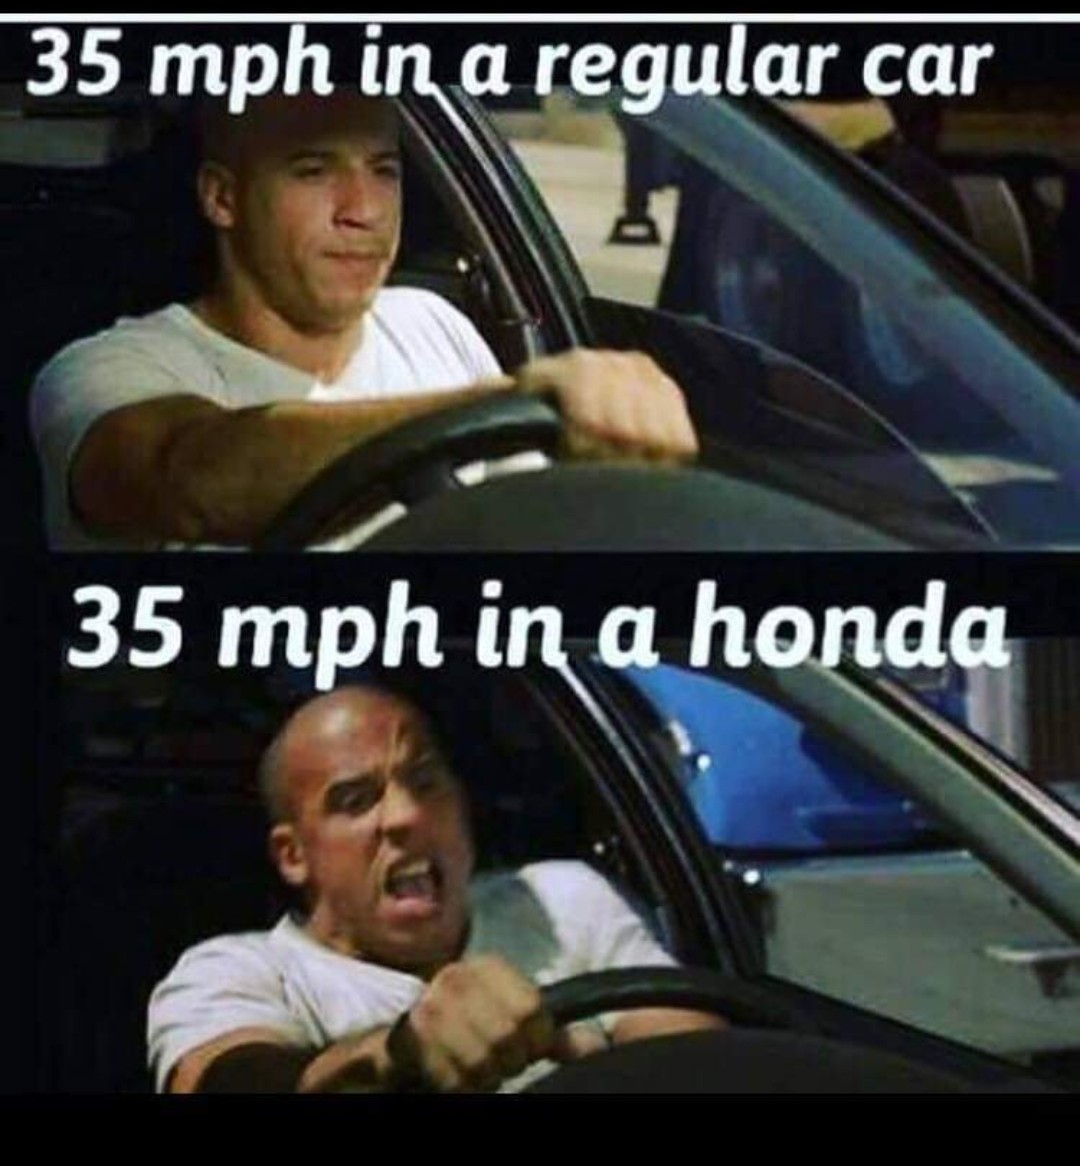 Quand tu roule en Honda